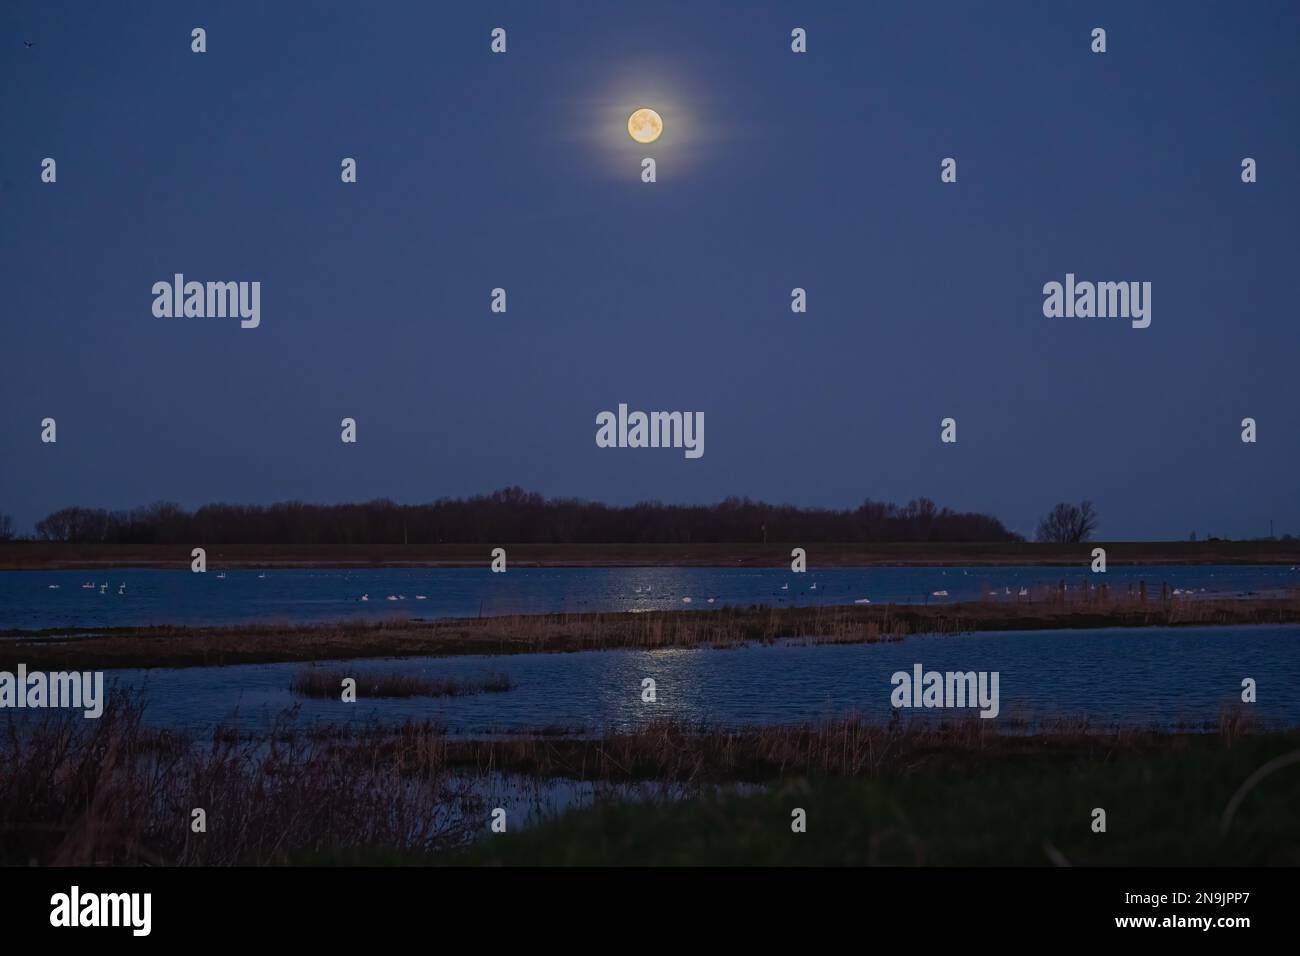 La pleine lune se reflétant dans les zones humides autour de Welney, Norfolk . Cygnes des trois variétés, Mute, Whooper et Bewick dormant au clair de lune. ROYAUME-UNI Banque D'Images